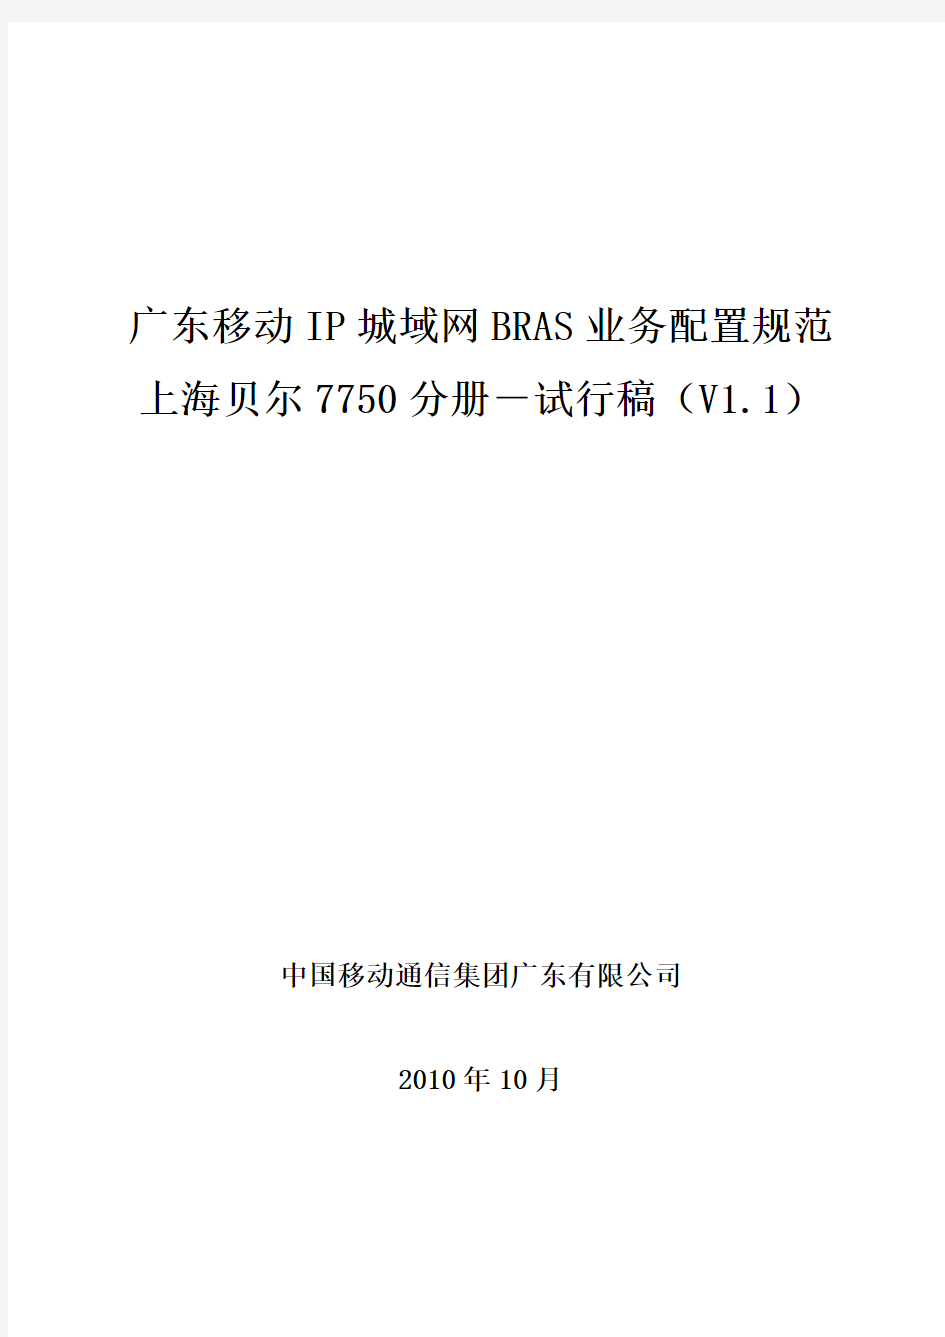 广东移动IP城域网BRAS业务配置规范7750分册V1.1(试行稿)